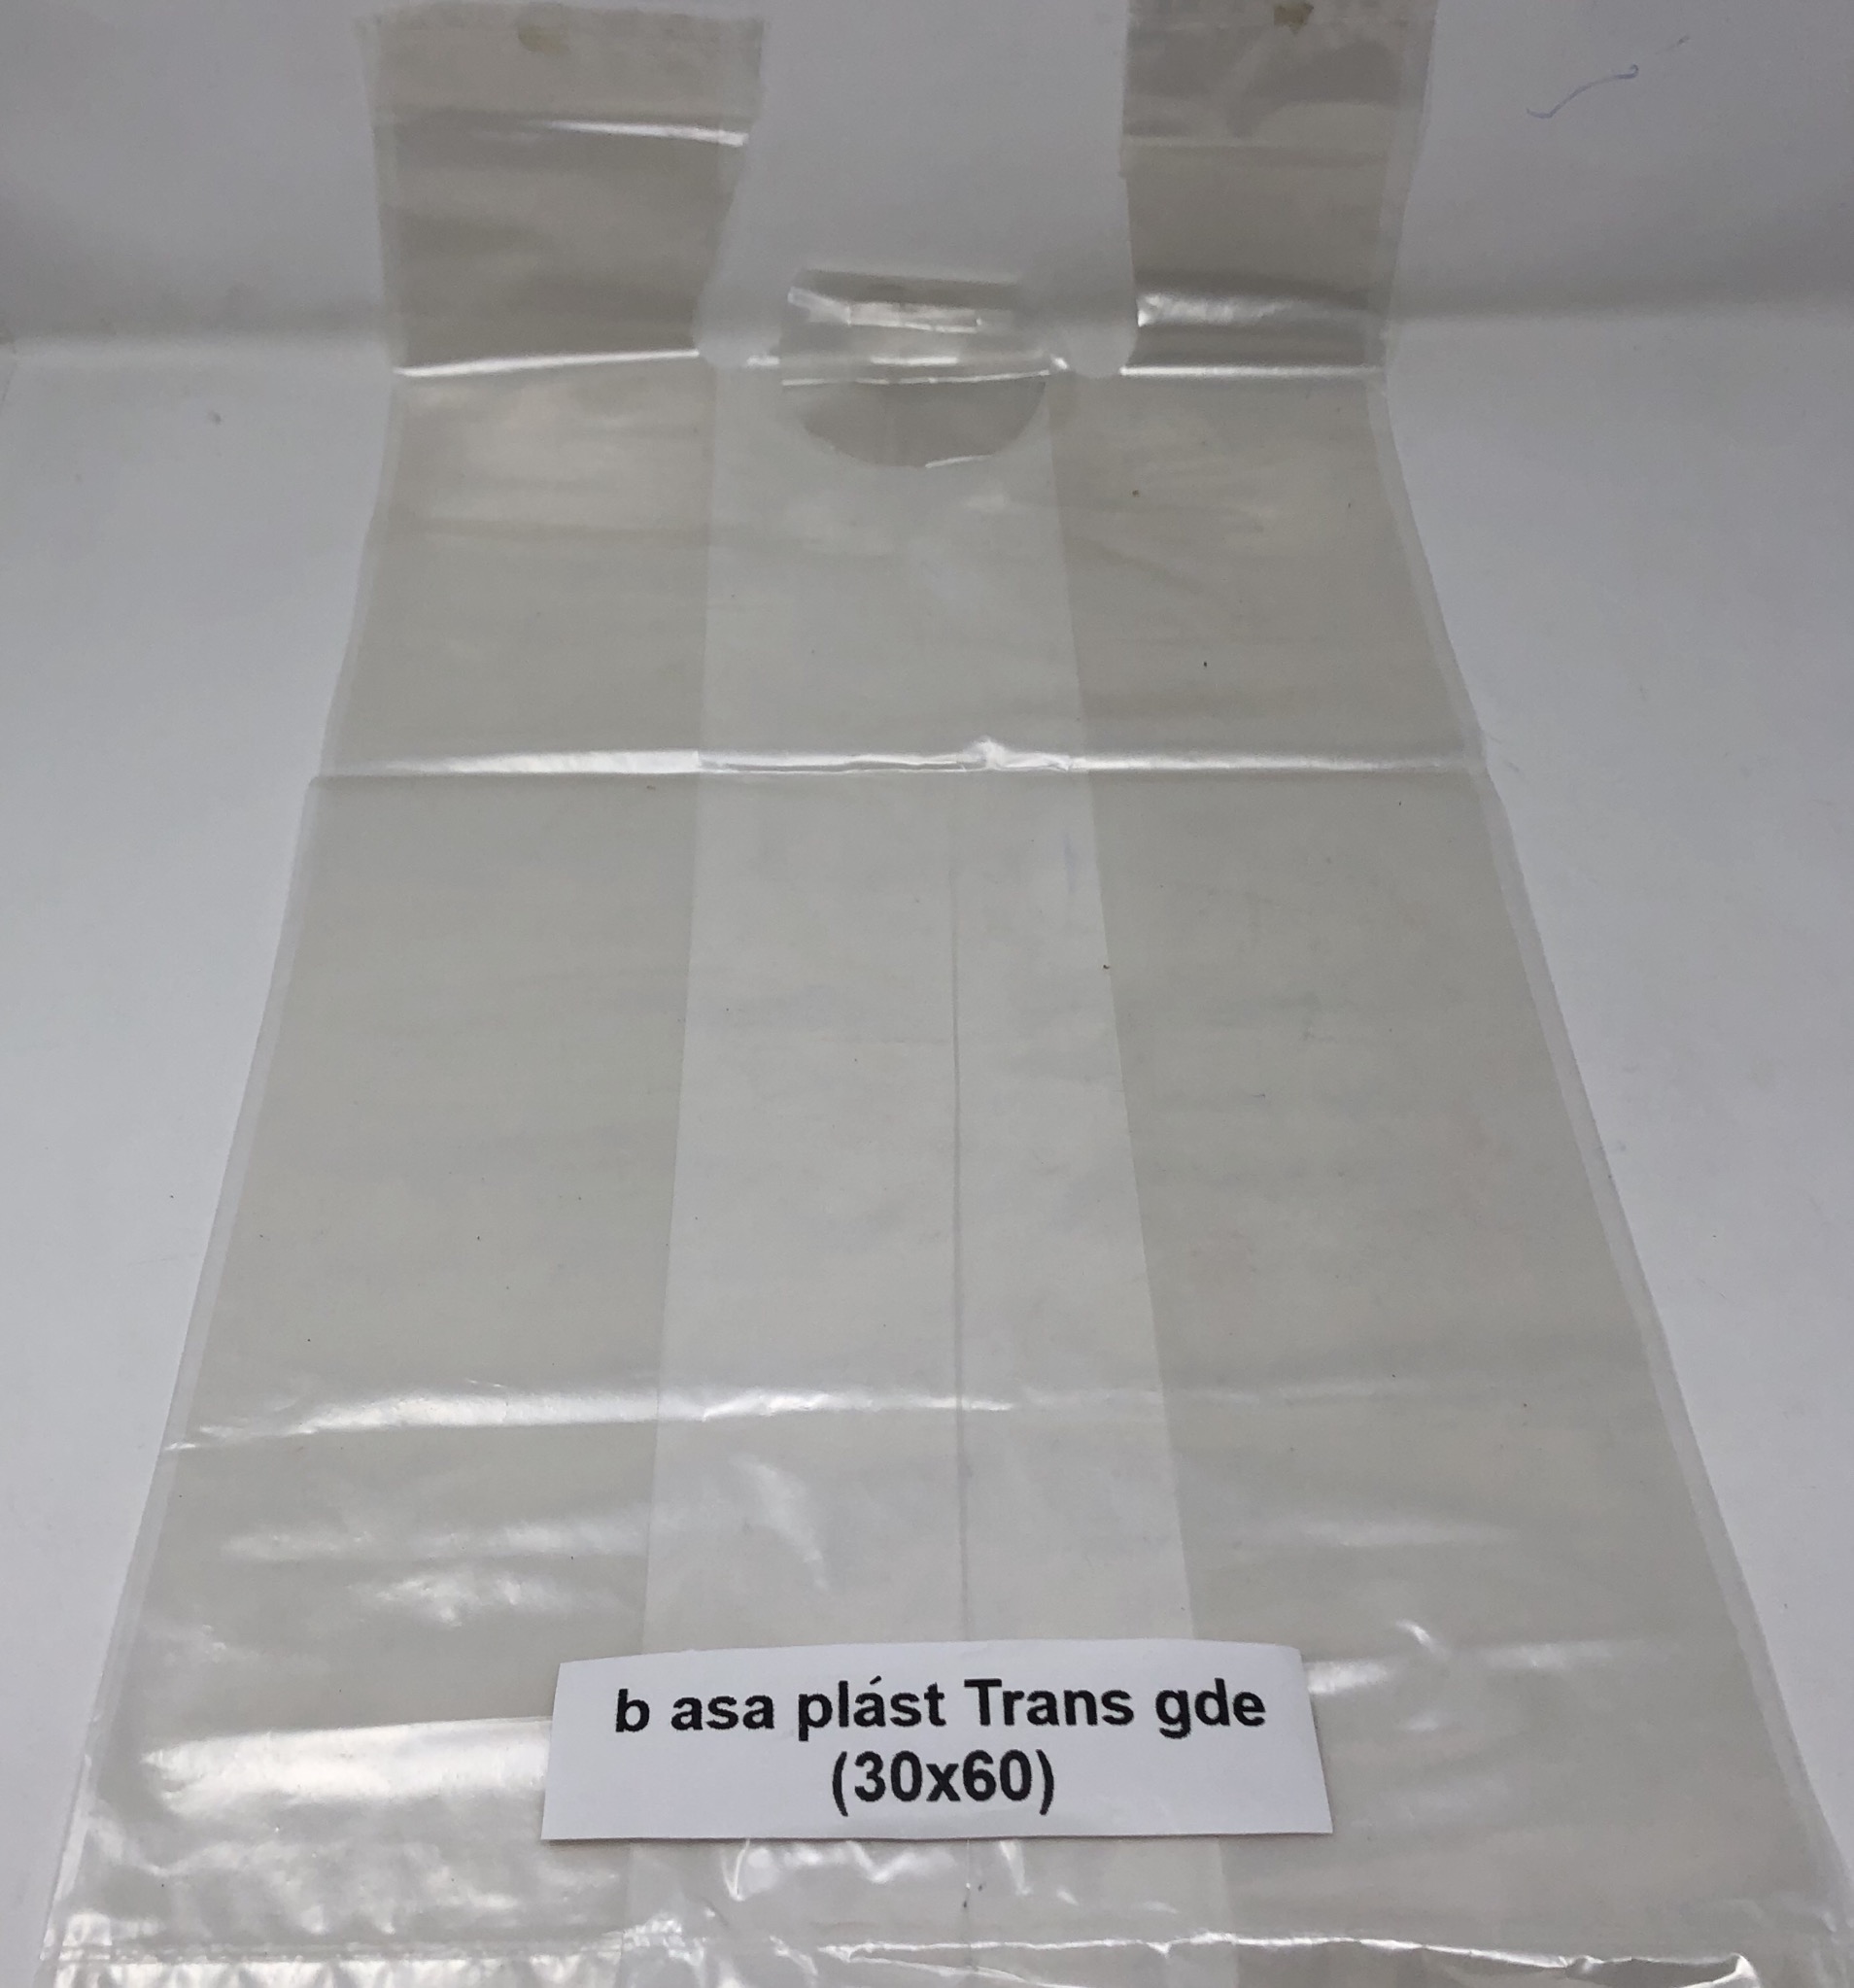 Bolsa pot en plástico transparente con asas de tubo